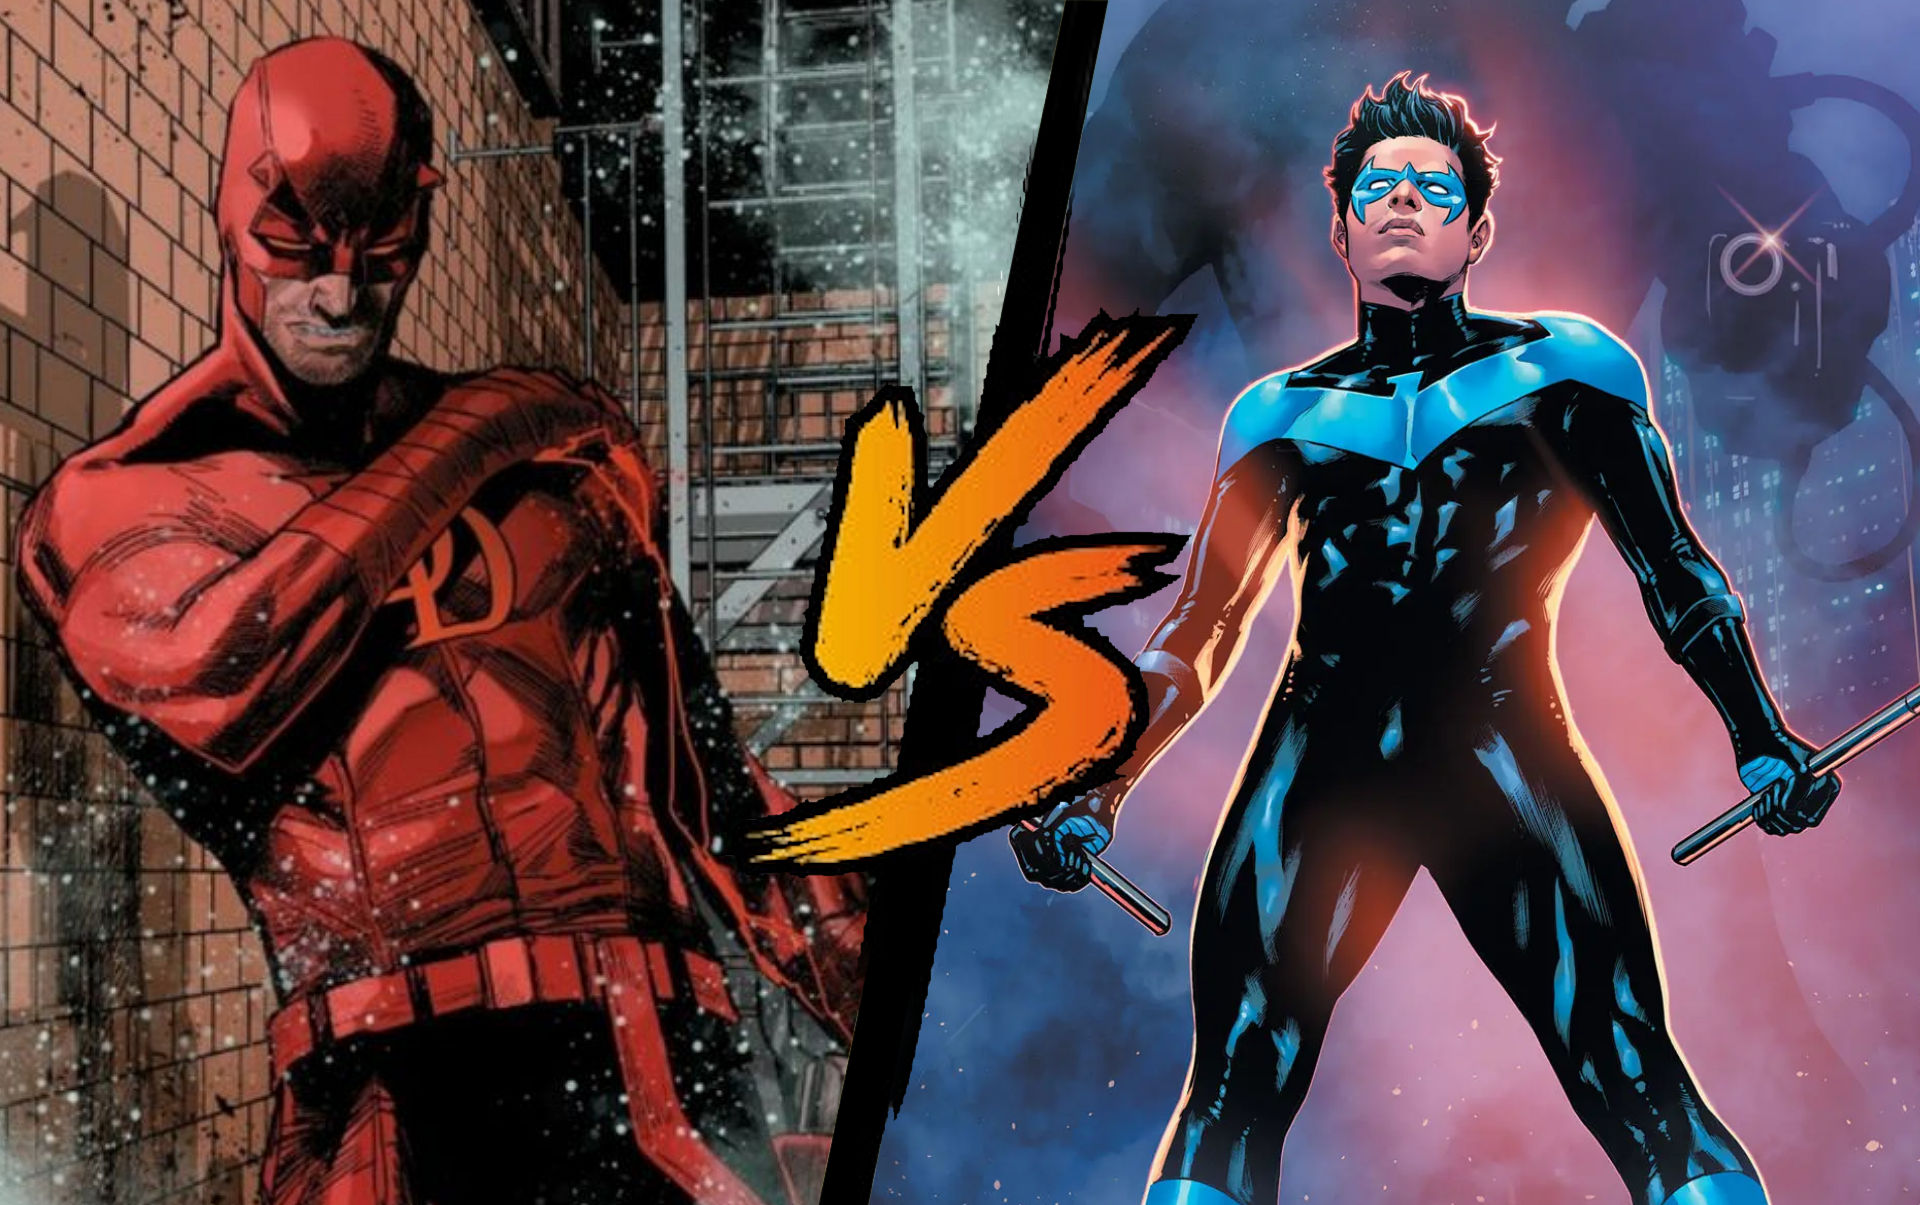 Daredevil (Marvel) vs Nightwing (DC Comics)